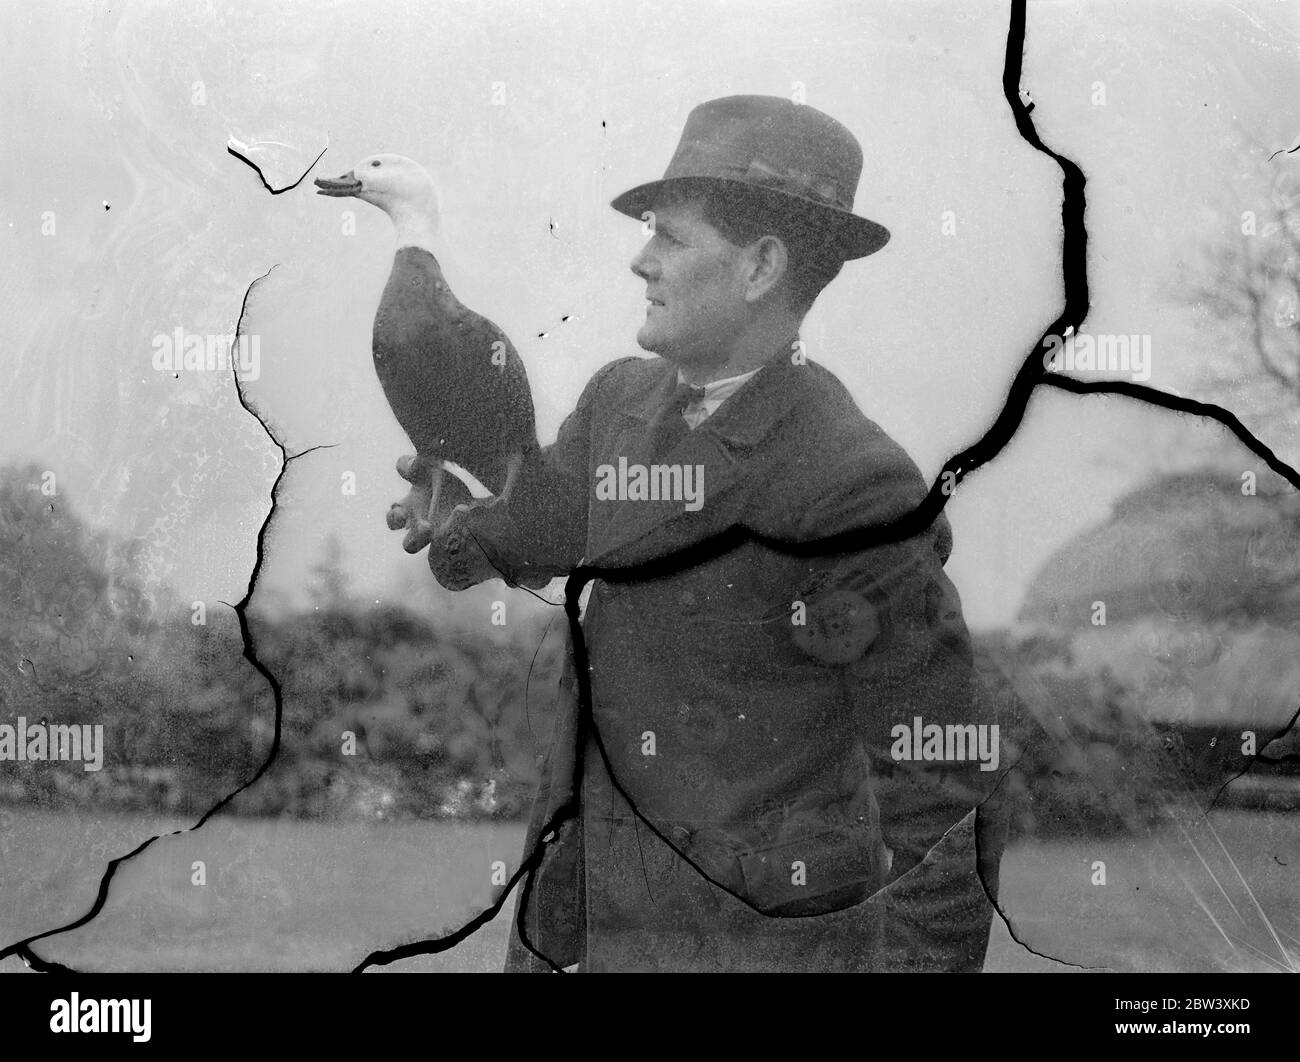 Kew ' s Vogel Mann . Wächter von 100 Vögeln, einschließlich crancs, Gänse, Enten und andere Arten aus allen Teilen der Welt, Herr J Claiden ist der "Vogelmann" von Kew Gardens. Er kennt alle Vögel mit Namen, aber sein besonderer Favorit ist Barbara, eine neuseeländische Paradies-Gans, die ihm in den Gärten folgt. Foto zeigt, Kew ' s ' Bird man ', Herr J Claiden, mit Barbara, sein Haustier Paradise Goose. 31 März 1937 Stockfoto